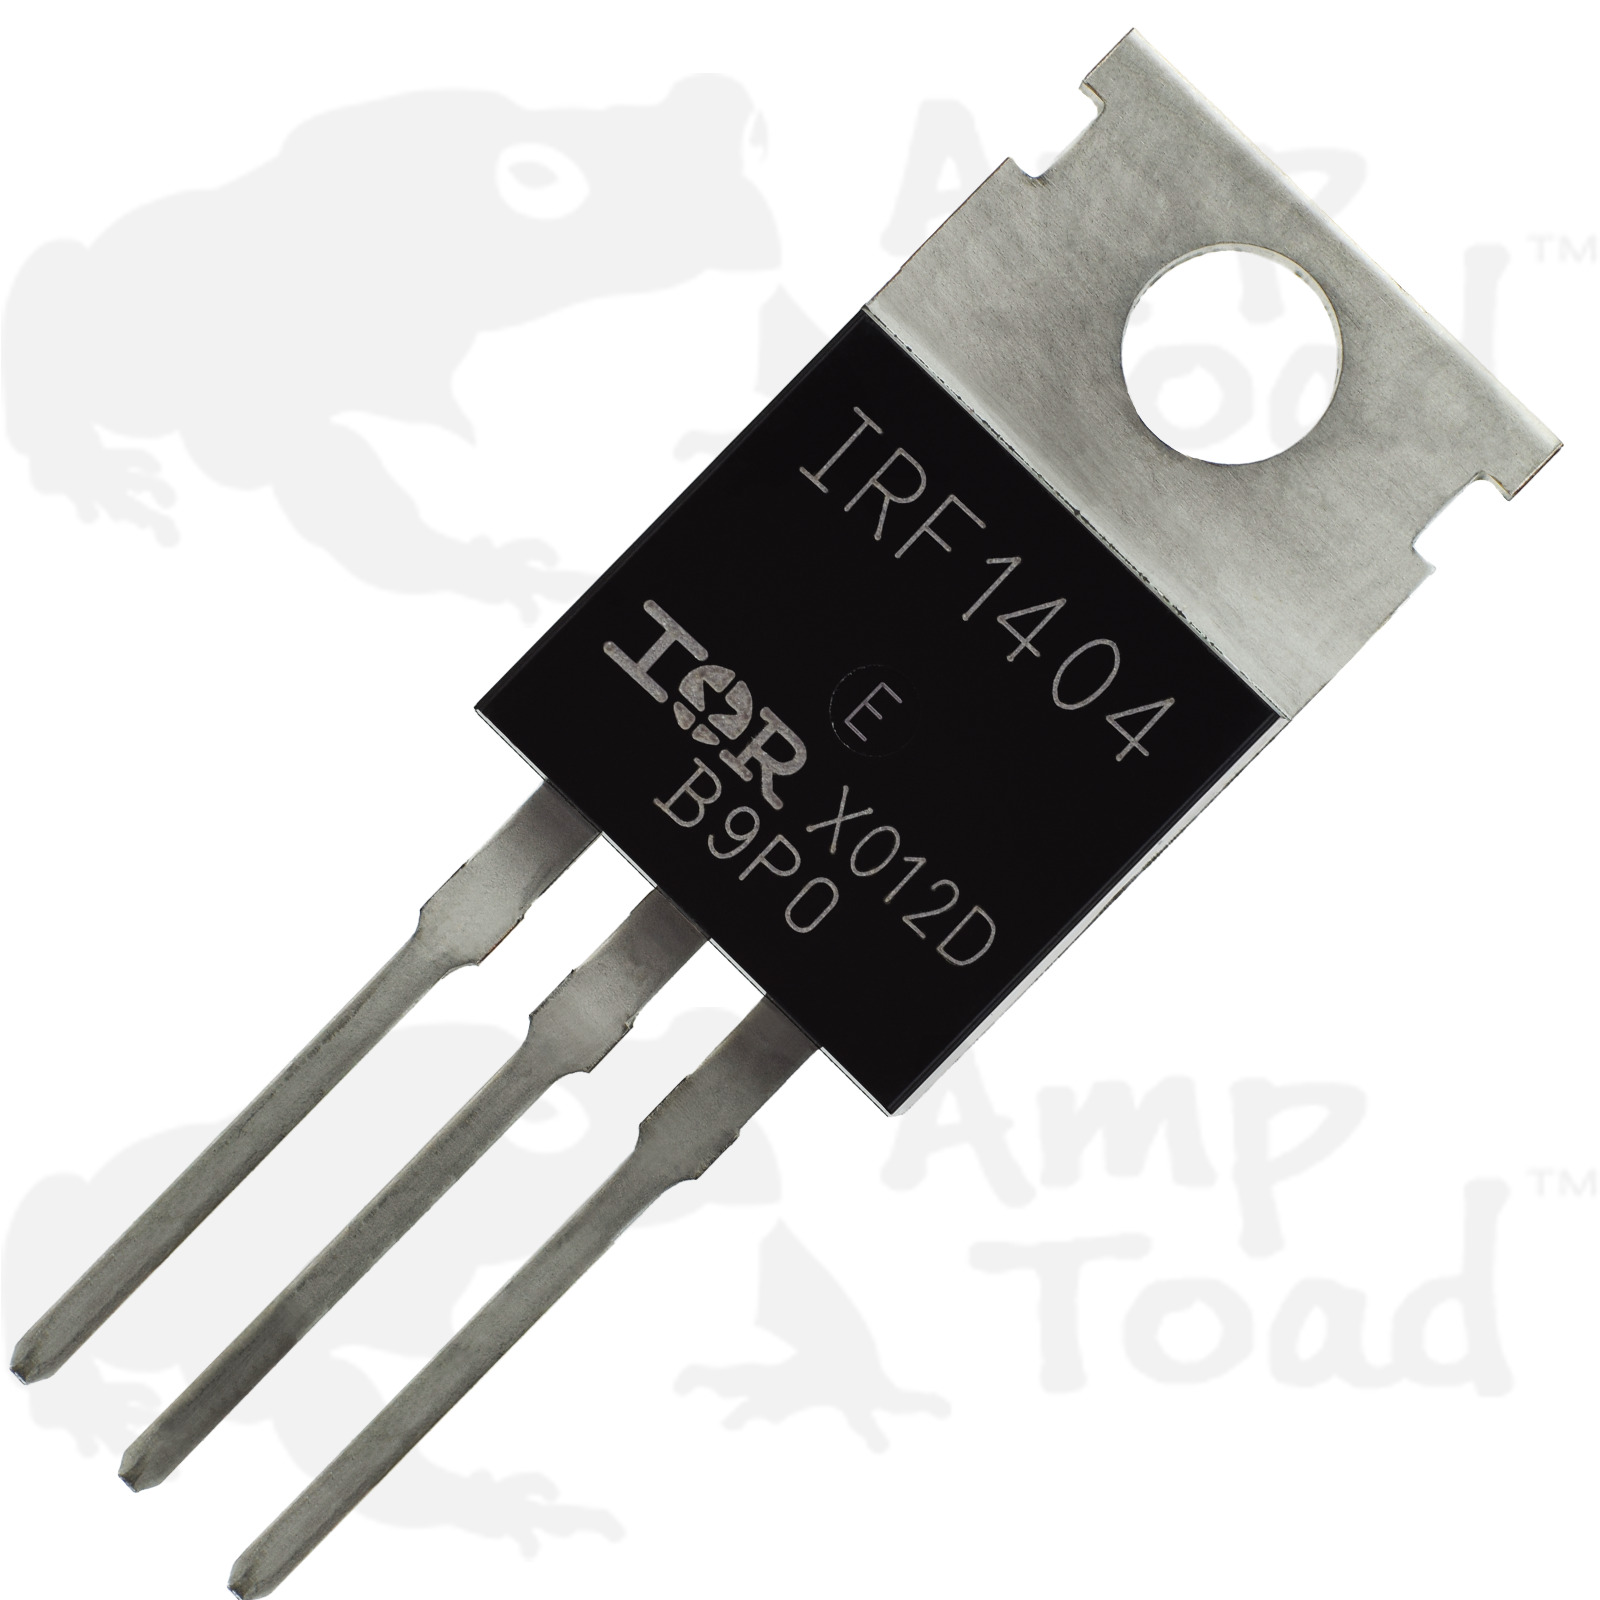 MOSFET - IRF1404 40V 162A - Transistor for Arduino Pi TTL